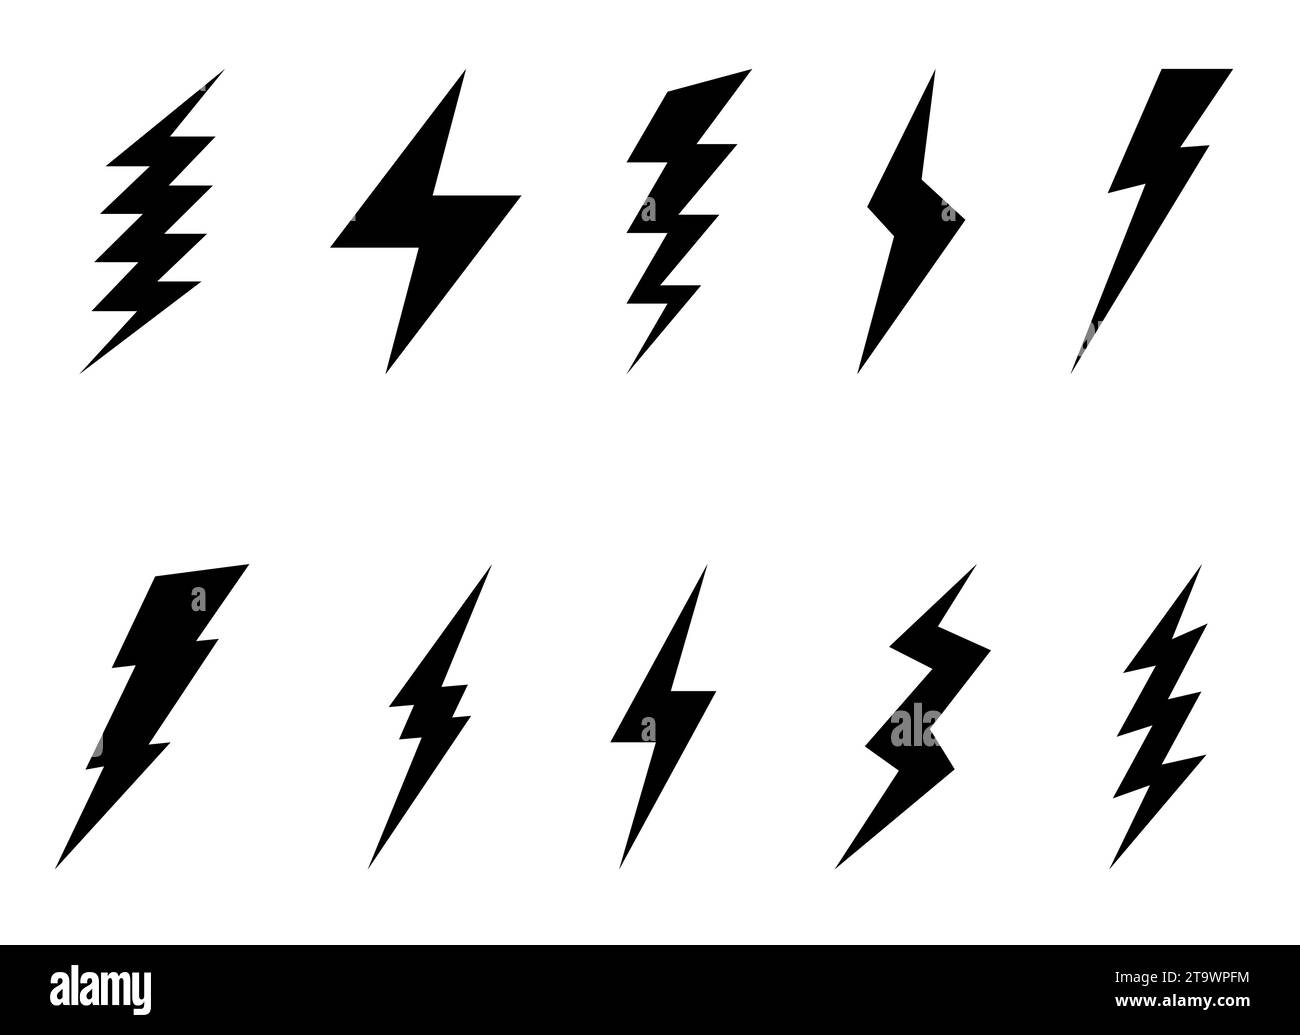 Insieme di icone Lightning Bolt isolate su sfondo bianco. Simbolo flash, thunderbolt. Semplice segnale di fulmine. Illustrazione vettoriale. Illustrazione Vettoriale